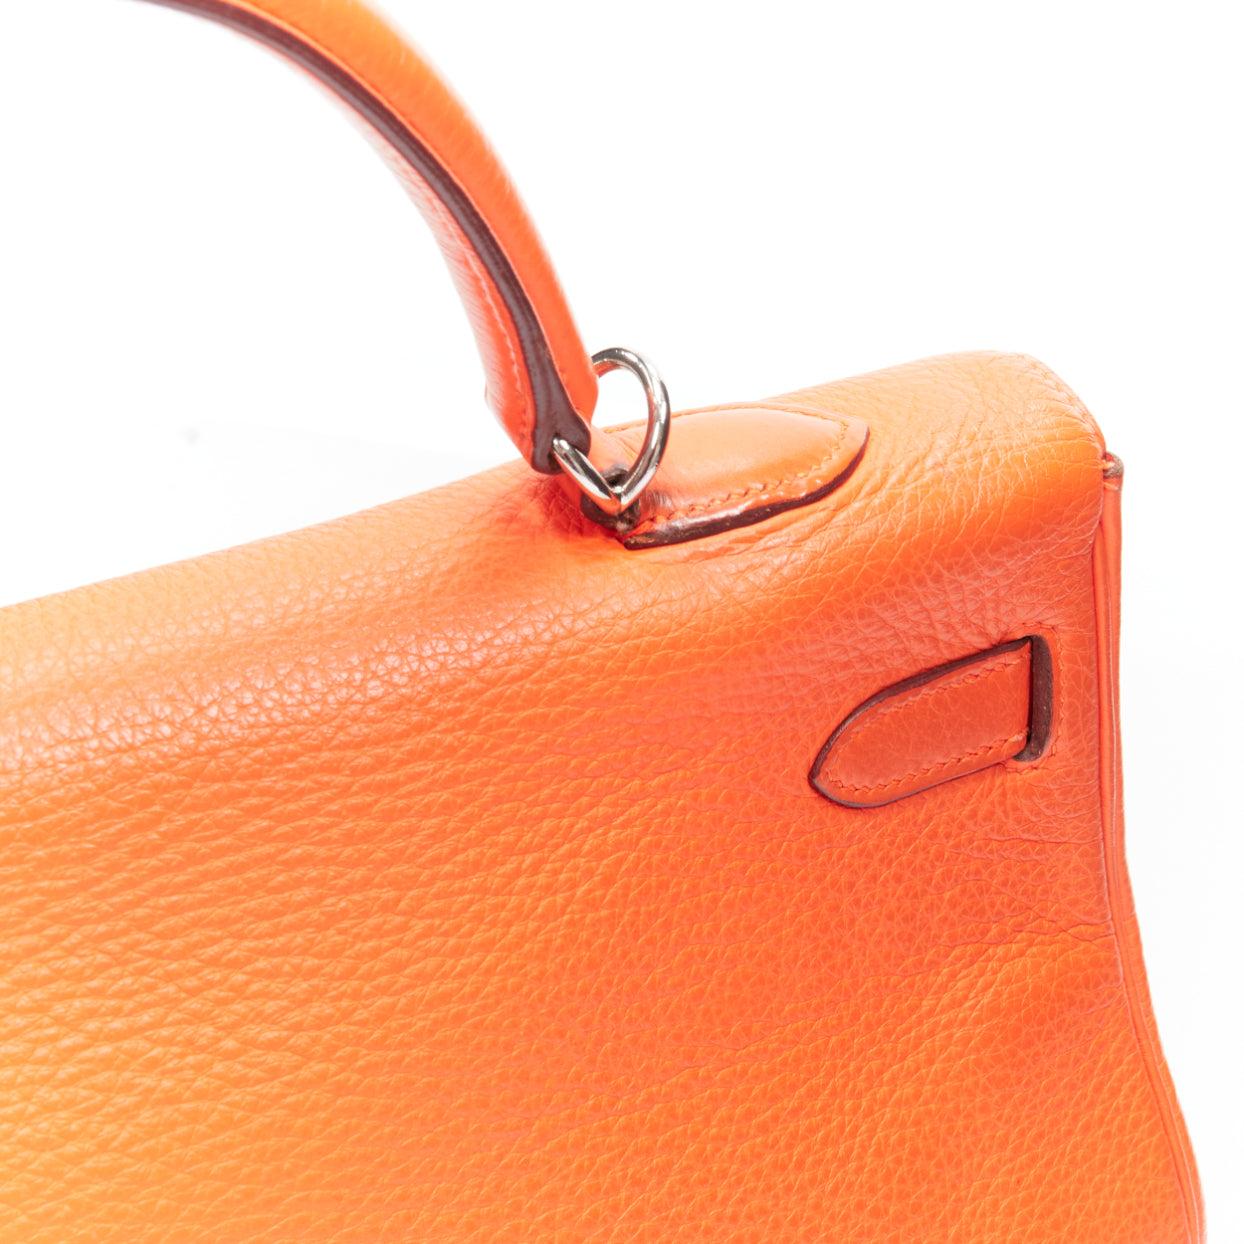 HERMES Kelly 32 PHW orange togo leather silver buckle top handle shoulder bag For Sale 11